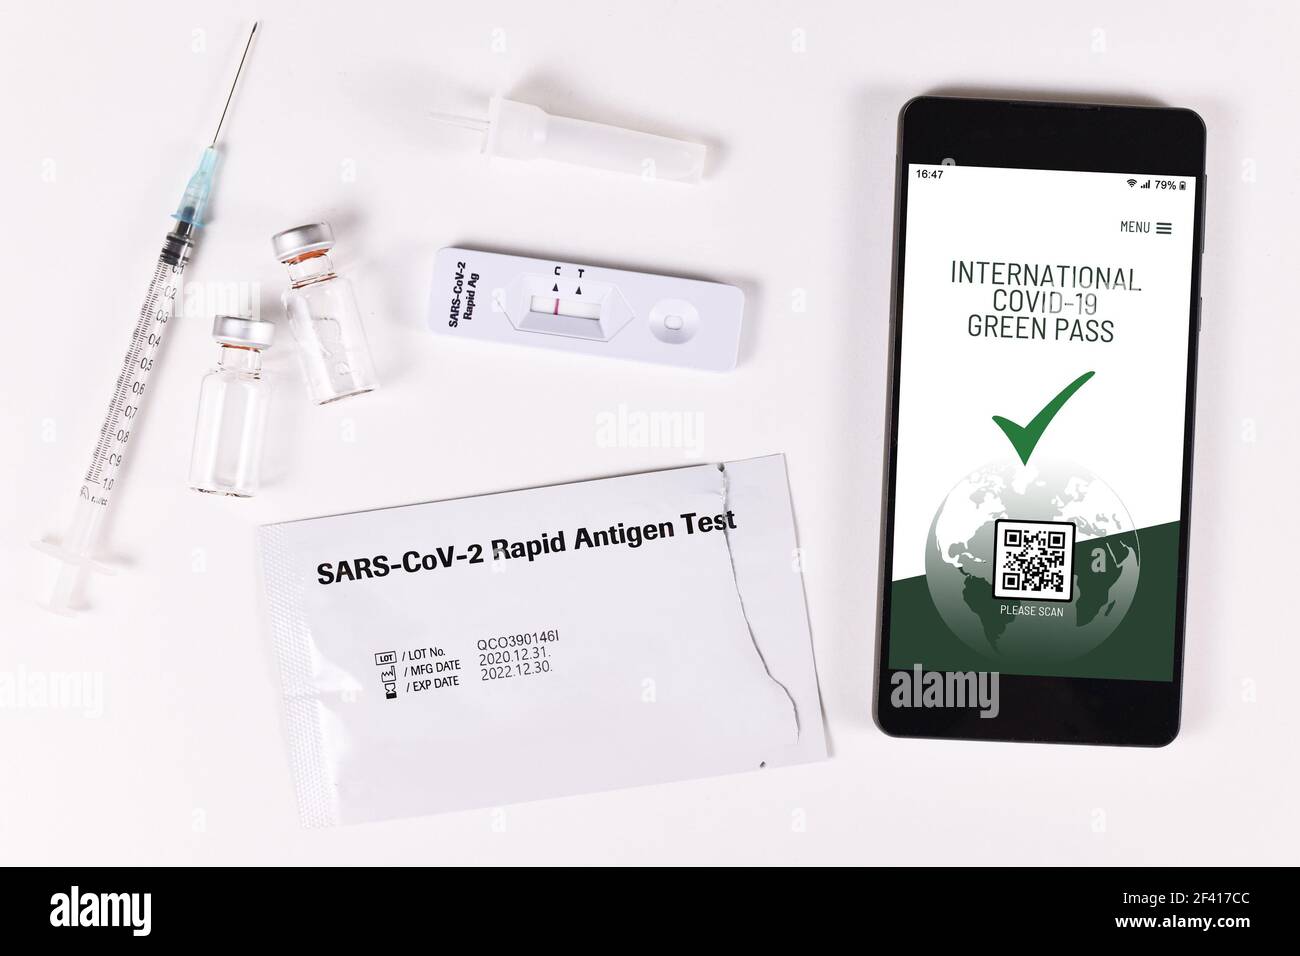 Concept de passeport vert international du virus Corona sur téléphone mobile dispositif permettant aux personnes ayant un vaccin ou un vaccin négatif de bénéficier de privilèges test d'antigène rapide Banque D'Images